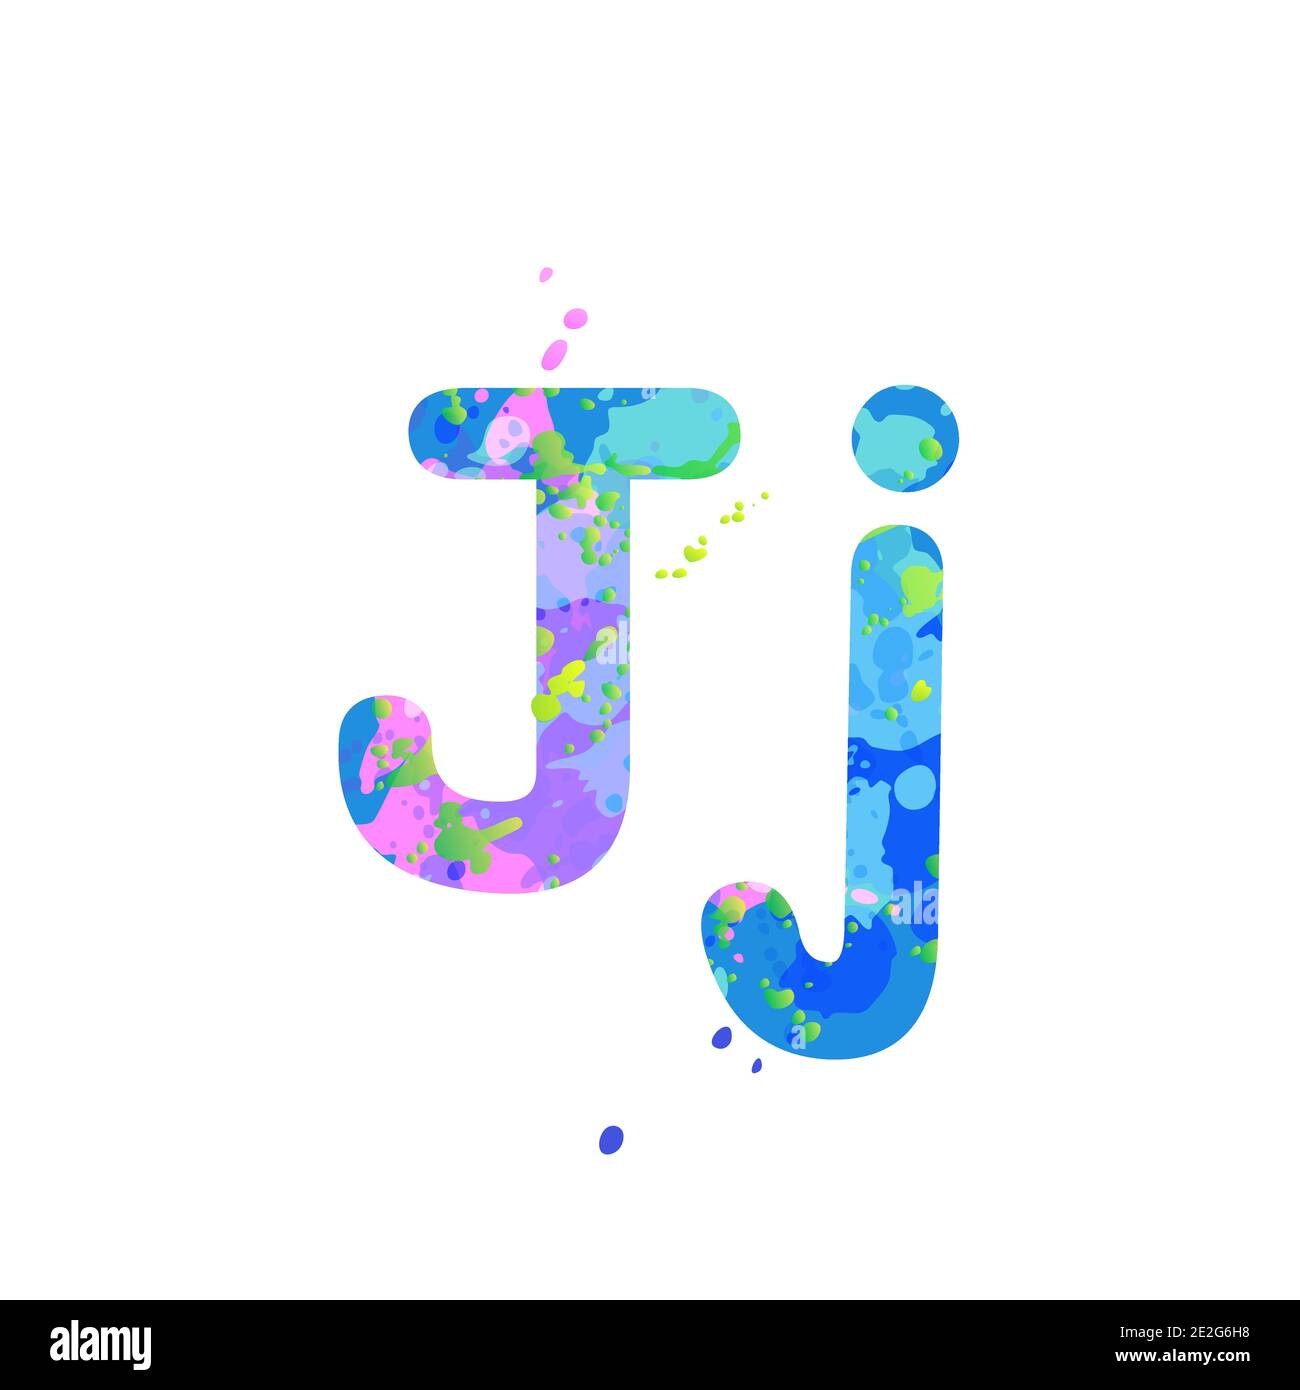 Buchstaben J Groß- und Kleinschreibung mit Wirkung von flüssigen  Farbflecken in blau, grün, rosa Farben, isoliert auf weißem Hintergrund.  Dekorationselement für die Gestaltung eines Flyers, Plakats, Deckblattes,  Titels. Vektor Stock-Vektorgrafik - Alamy